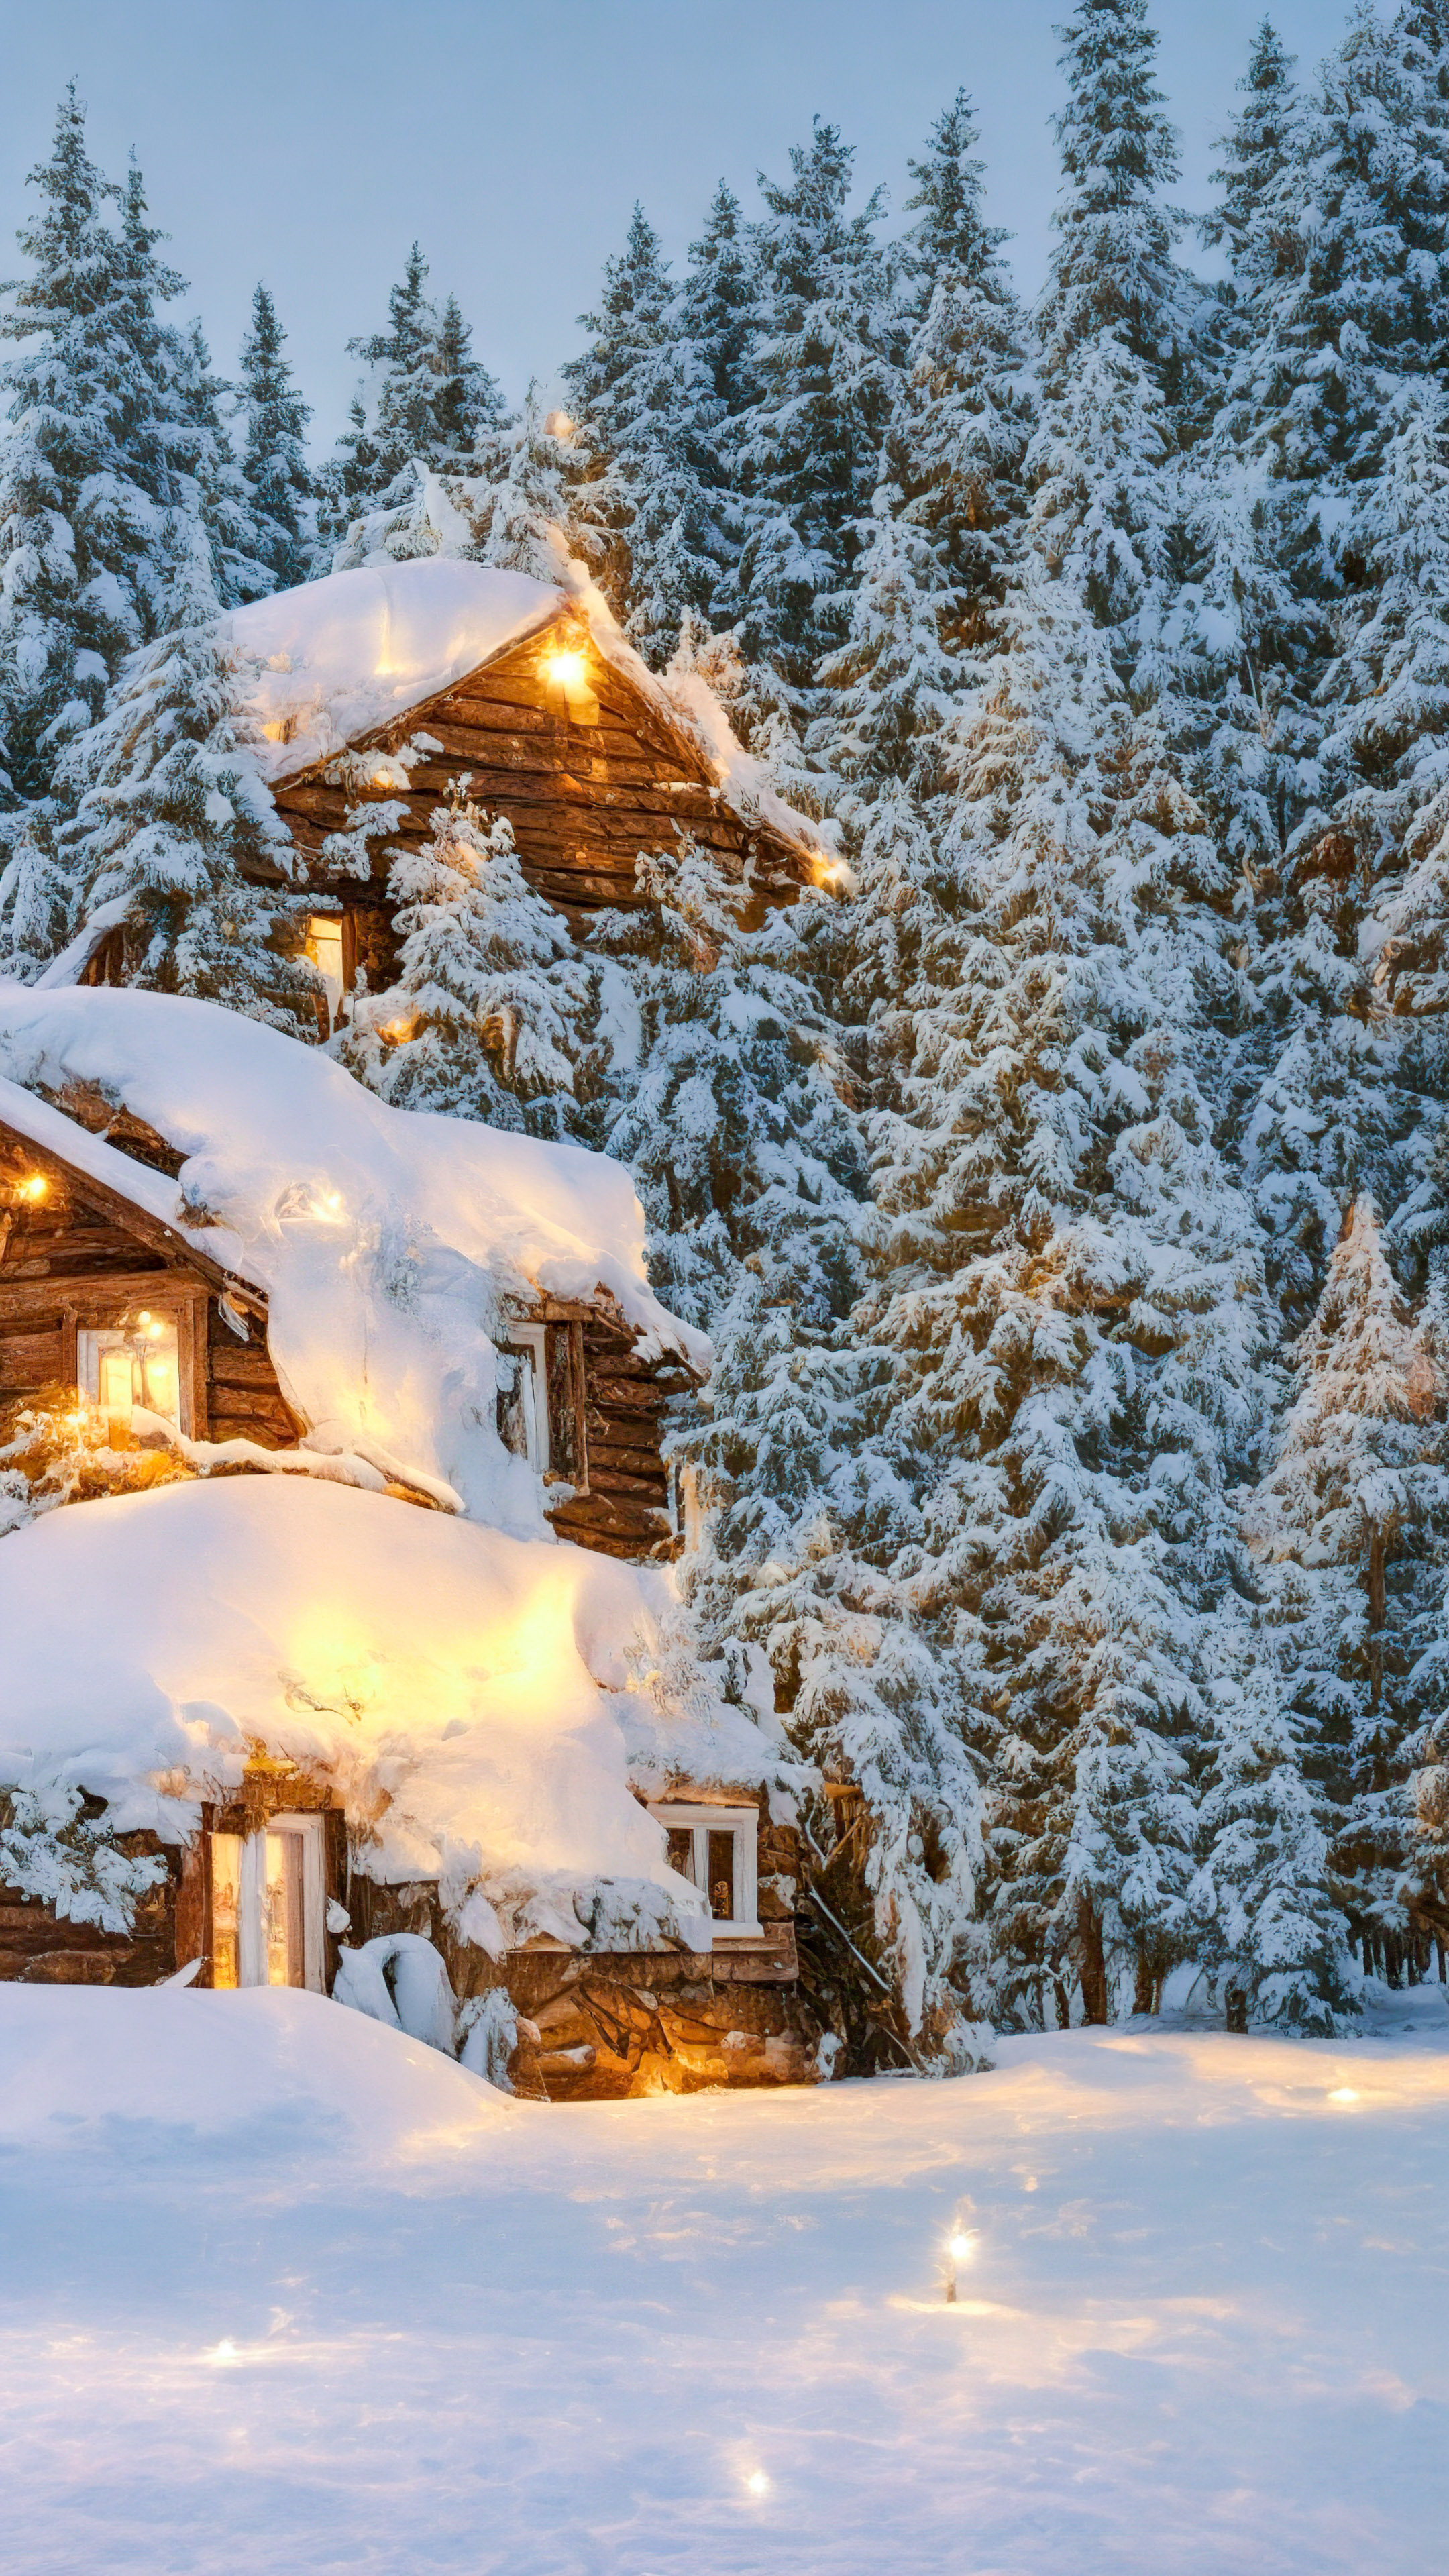 Faites l'expérience de la tranquillité d'un hiver serein, où des arbres couverts de neige et une cabane confortable ornée de lumières de fête prennent vie dans notre fond d'écran de beaux paysages en 4K.